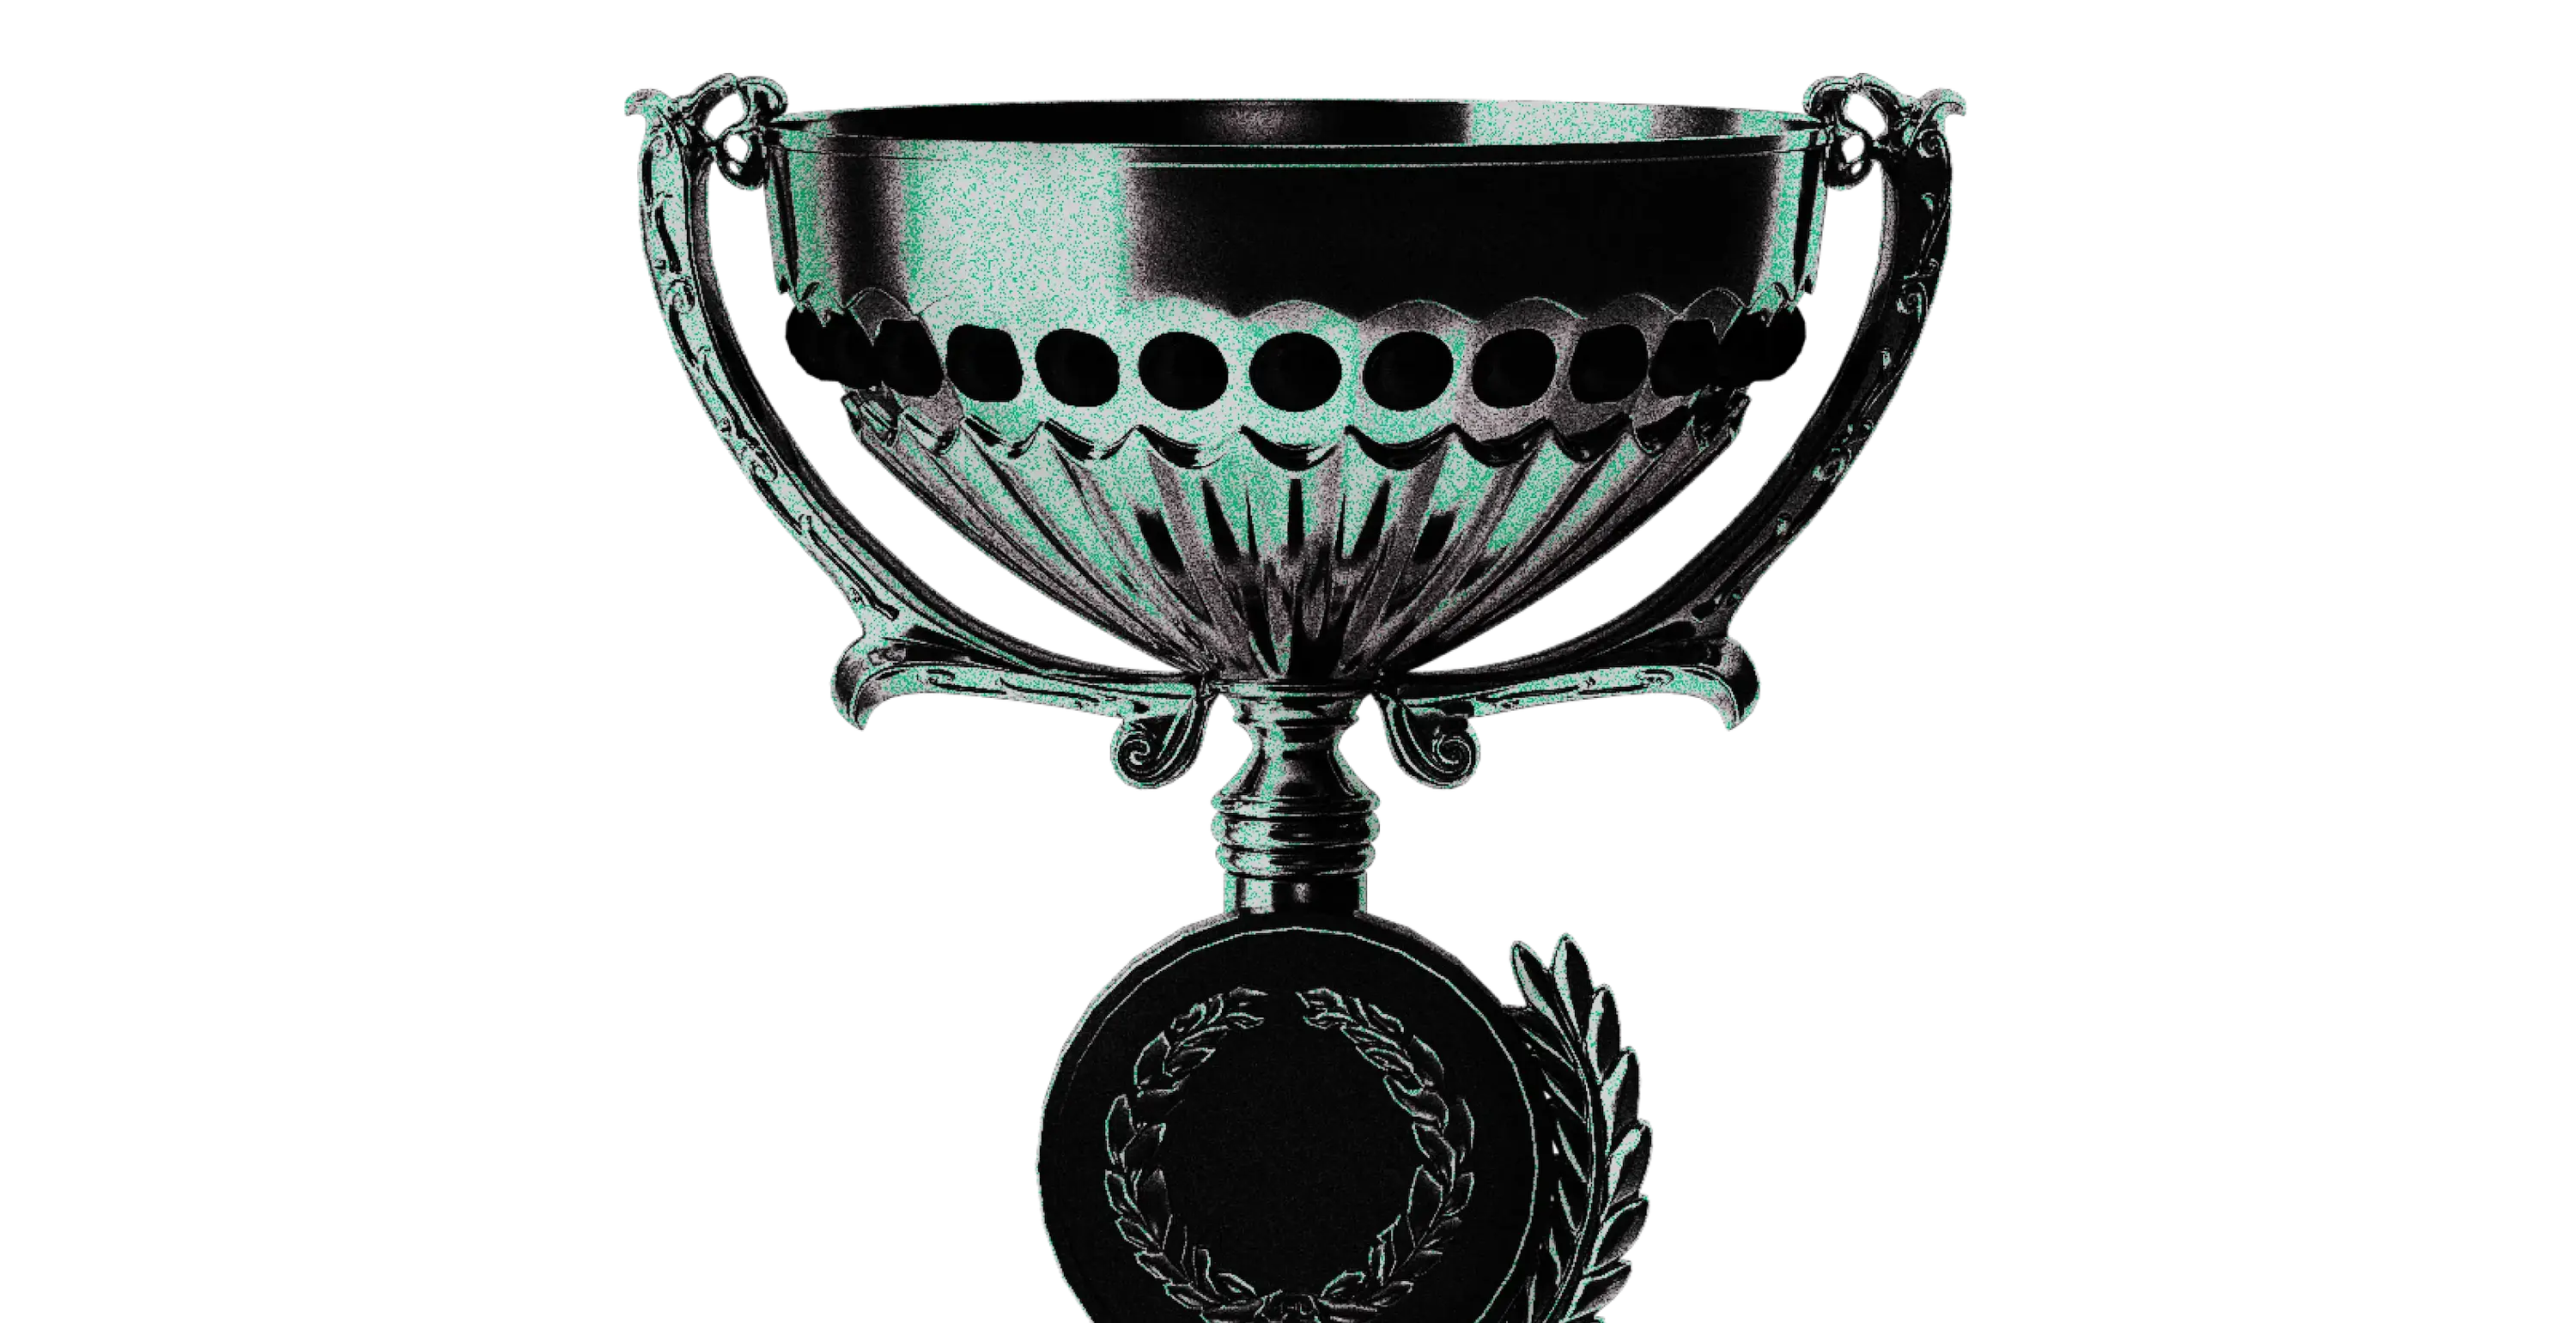 Puchar w kolorach brandingu software house Kryptonum, symbolizuje wysoką jakość usług